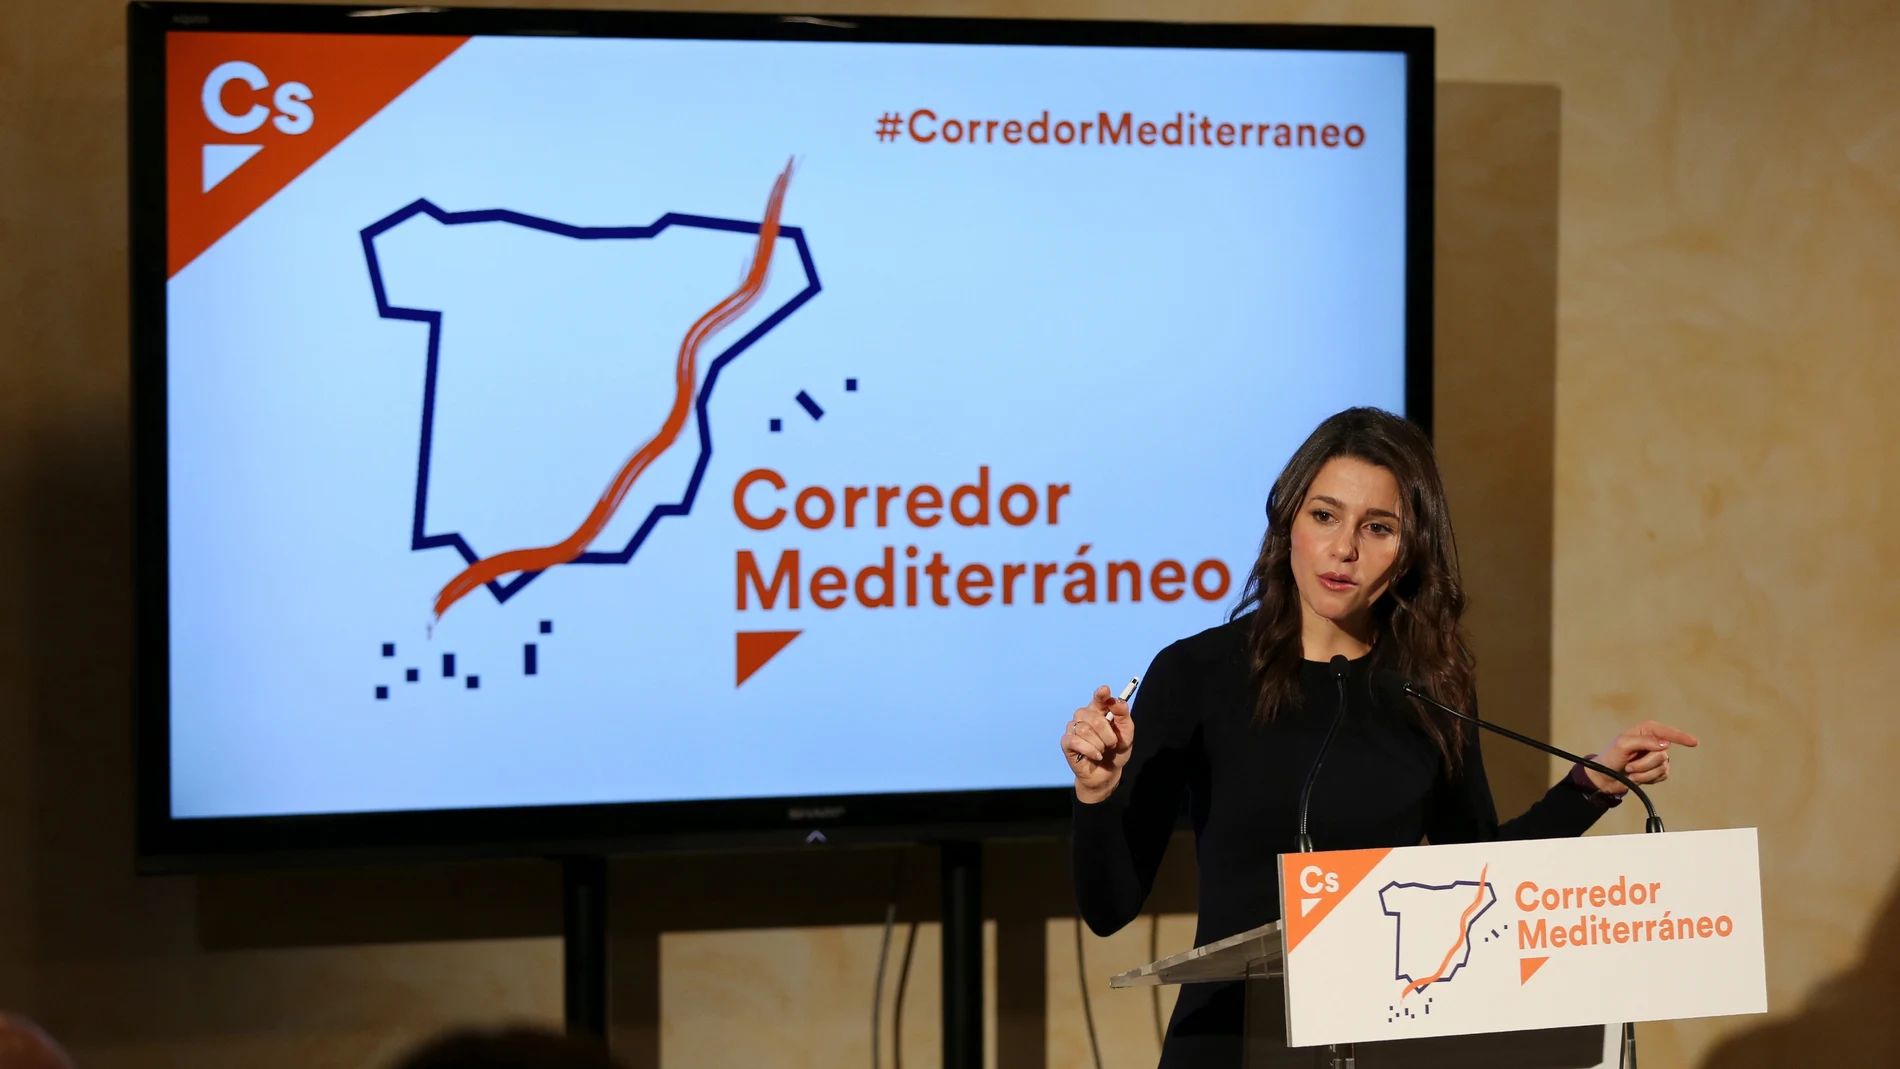 La portavoz del partido, Inés Arrimadas, durante su intervención en una reunión de trabajo a favor del Corredor del Mediterráneo 